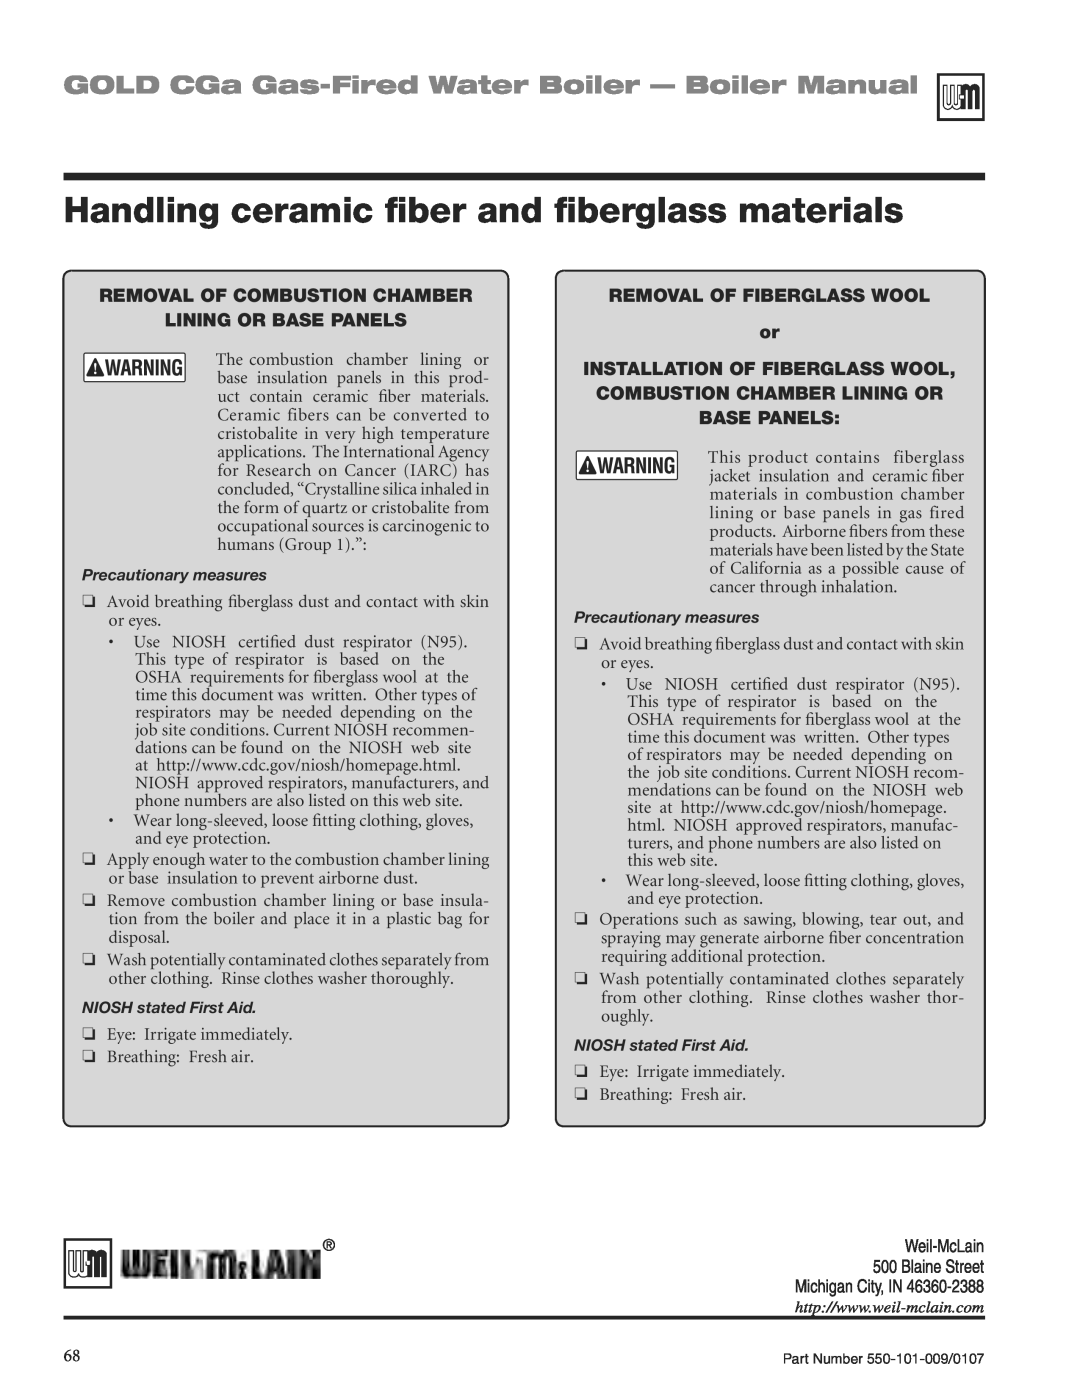 Weil-McLain CGA25SPDN manual Handling ceramic ﬁber and ﬁberglass materials, GOLD CGa Gas-FiredWater Boiler - Boiler Manual 